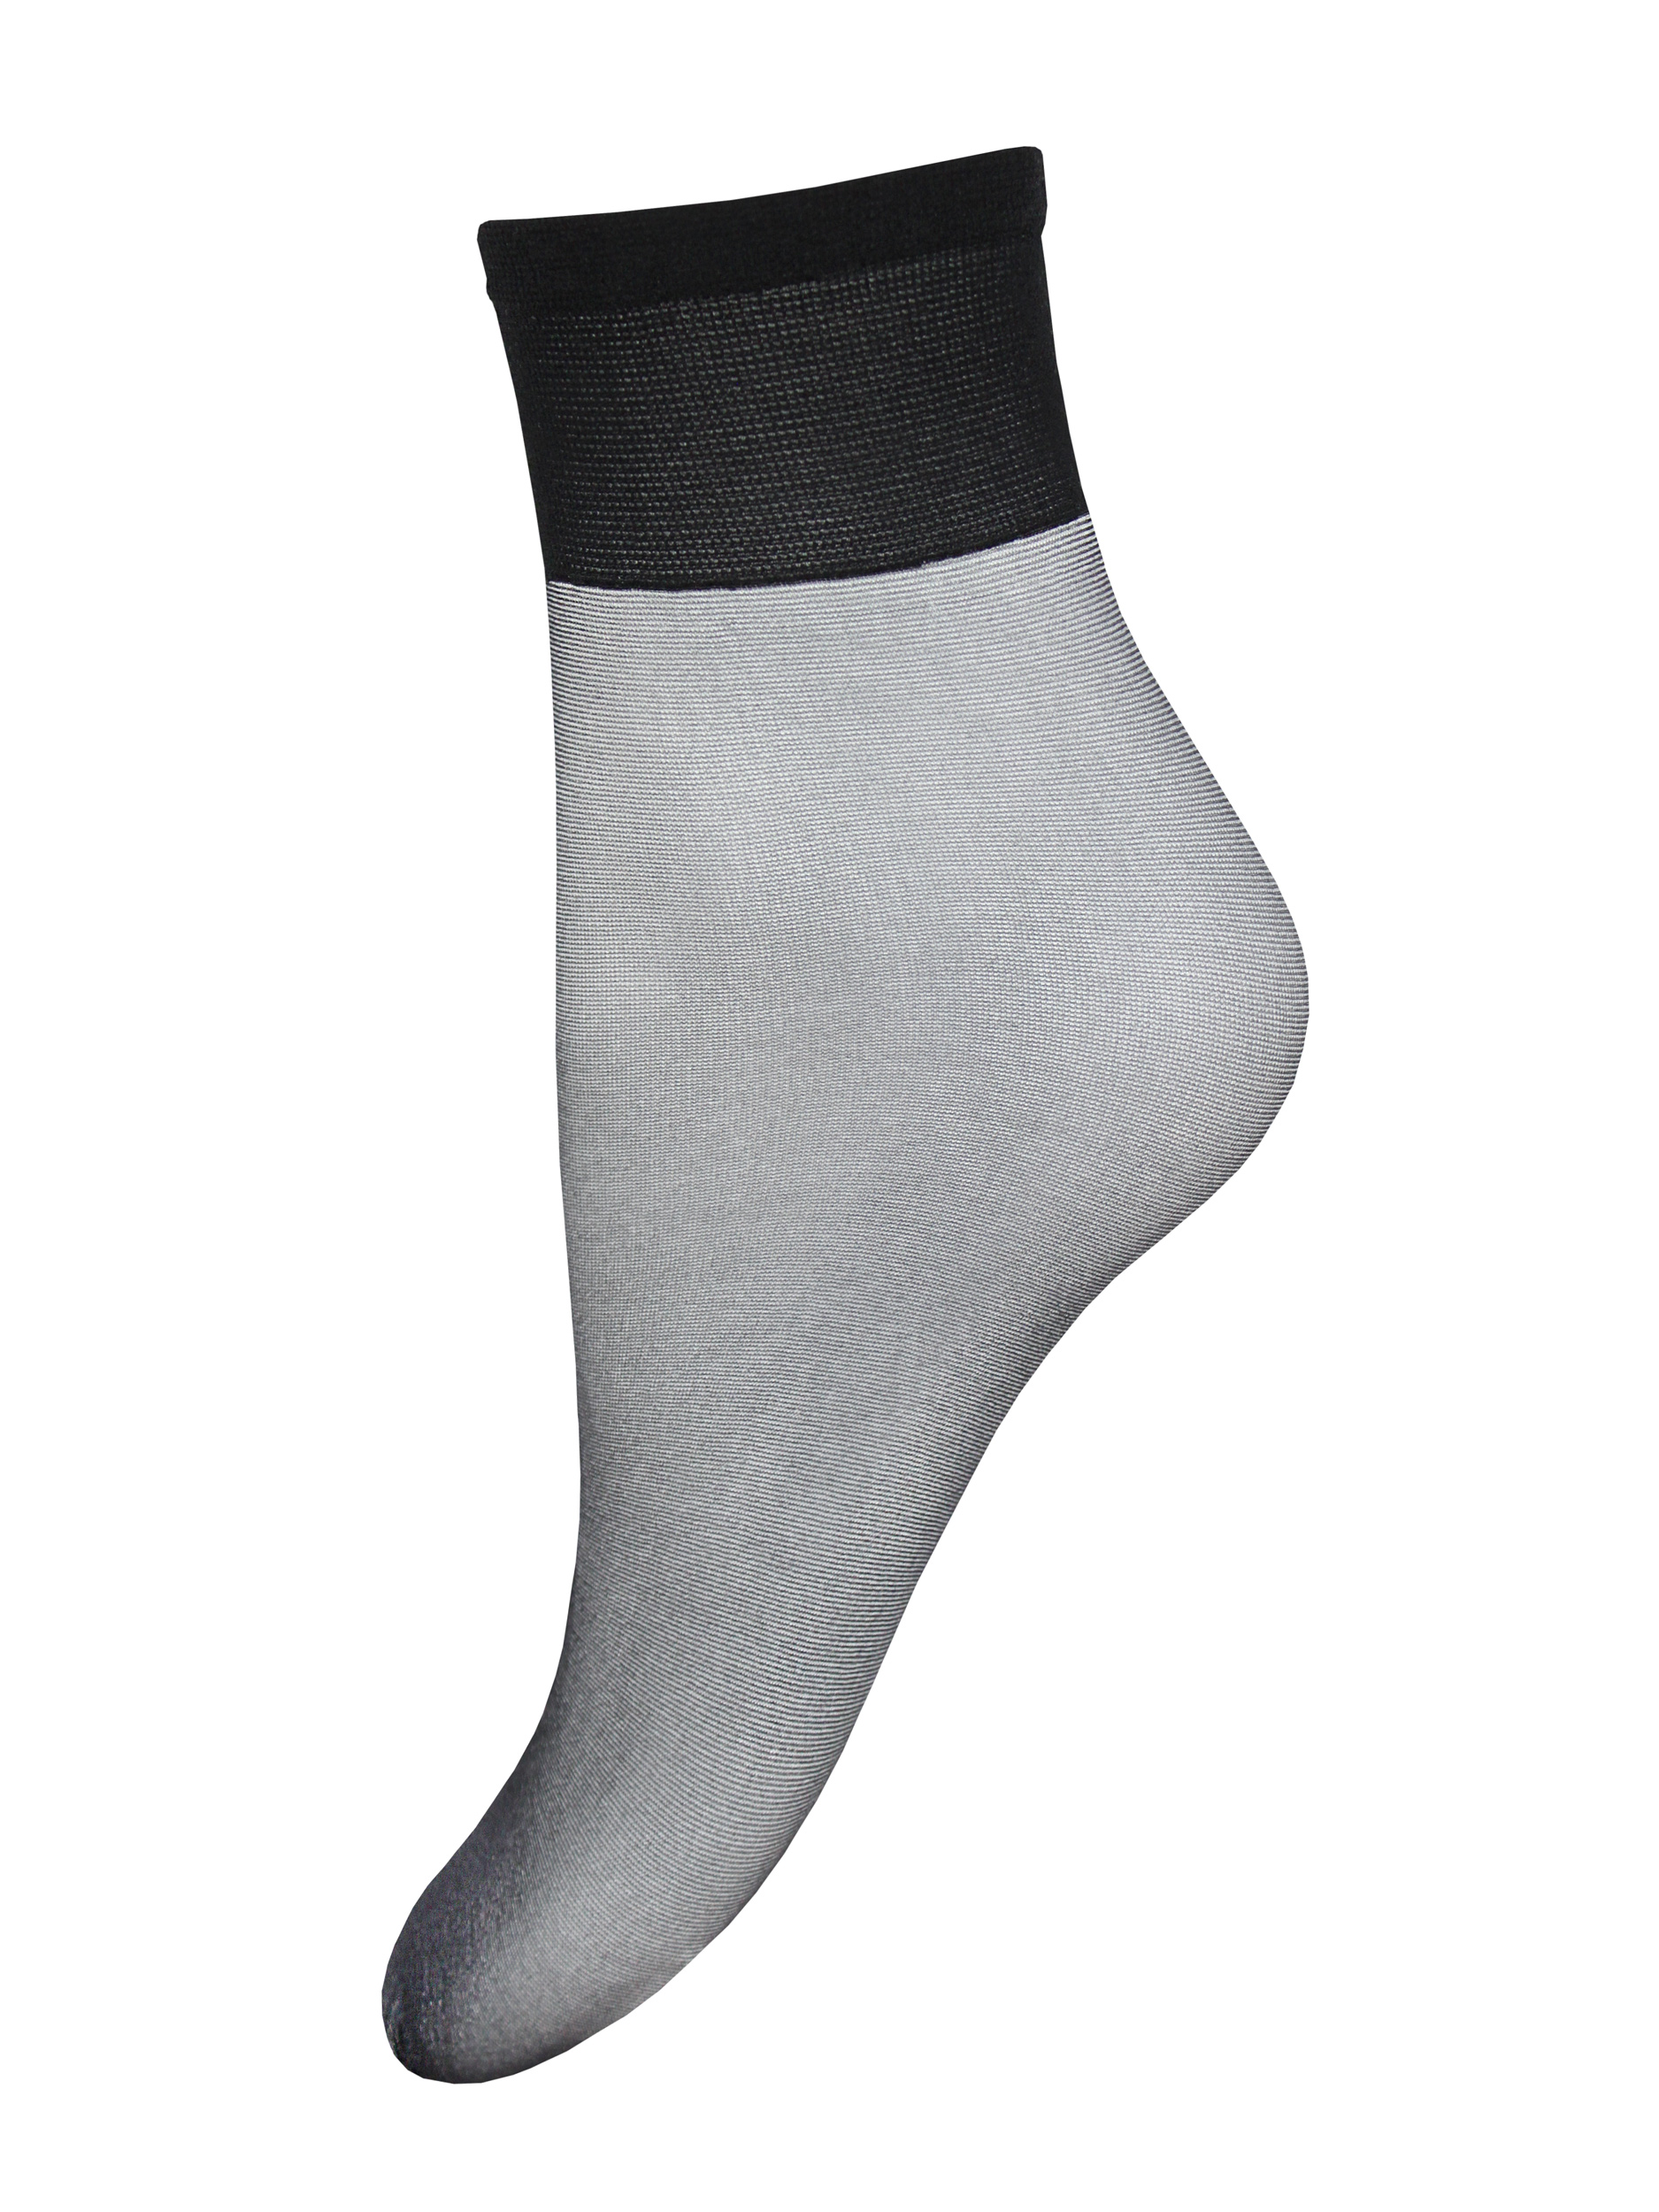 Комплект носков женских Mademoiselle Silvia 10 (c.) 3 paia белых UNICA